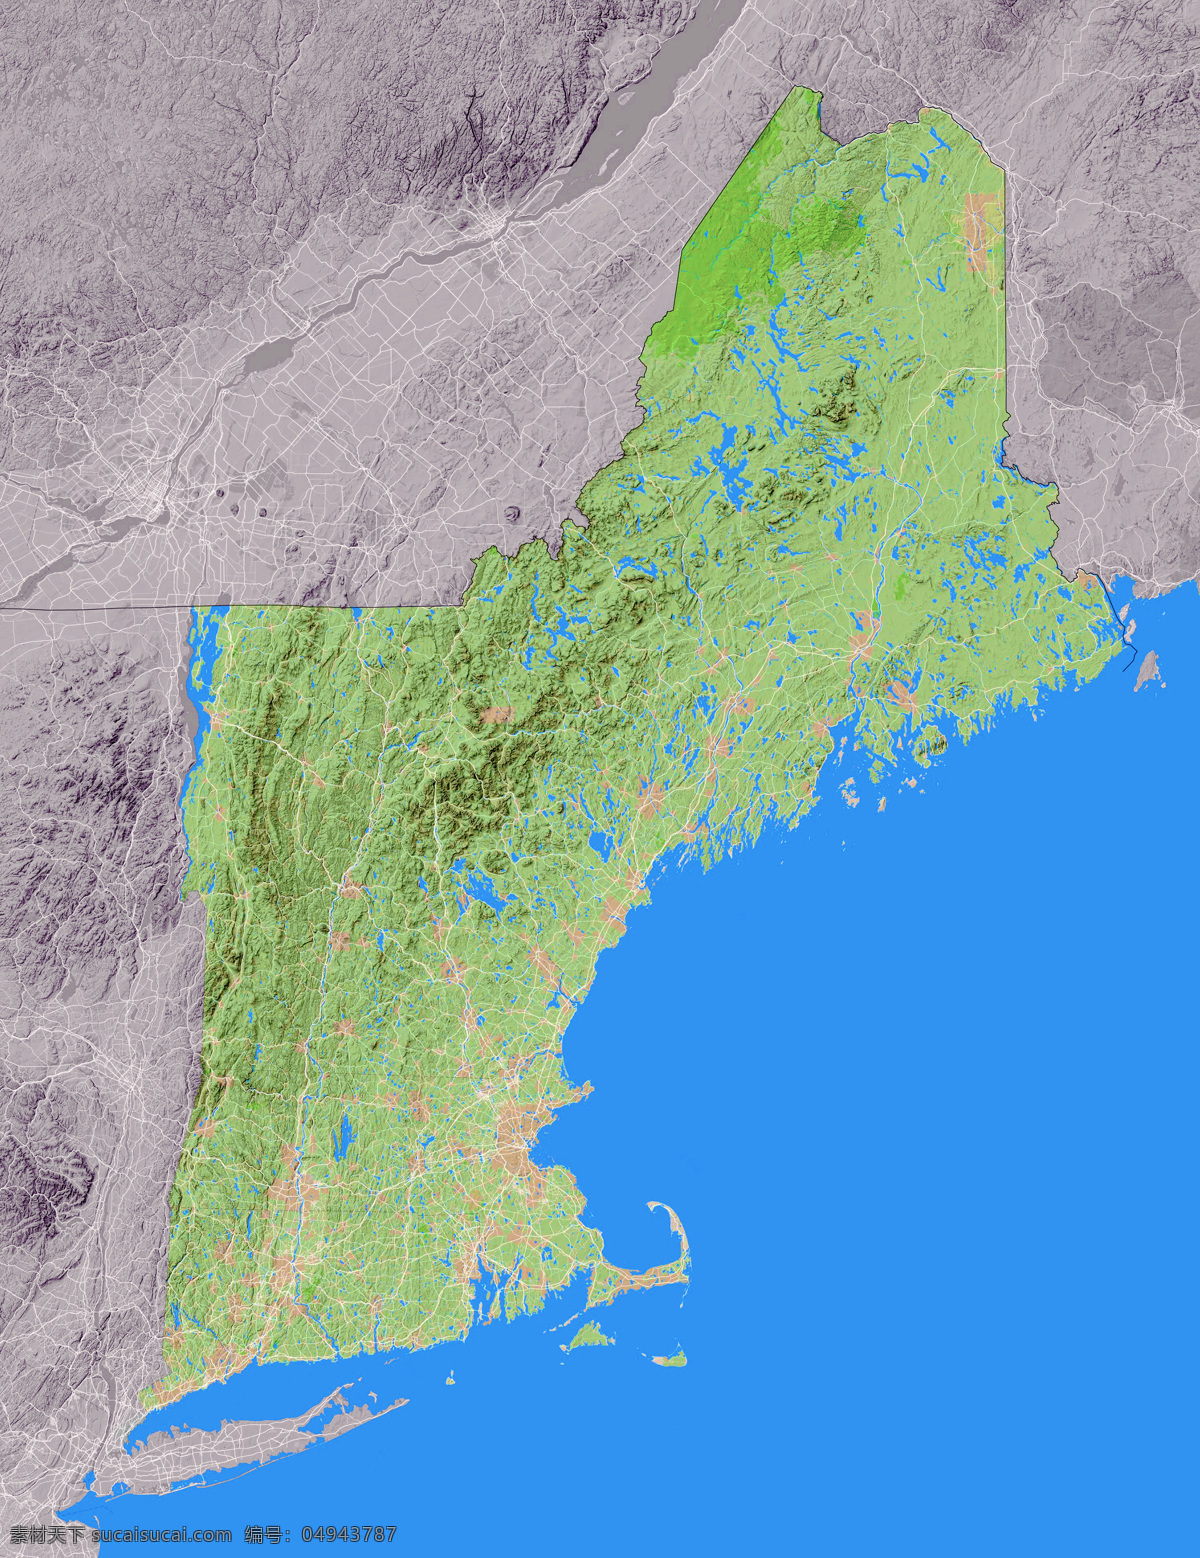 美国 新英格兰 州 地形图 新英格兰州 欧洲 上帝之眼 卫星图 俯视图 nasa 地中海 海洋 山地 西西里岛 撒丁岛 阿尔卑斯山 南欧 东欧 地球 自然景观 自然风景